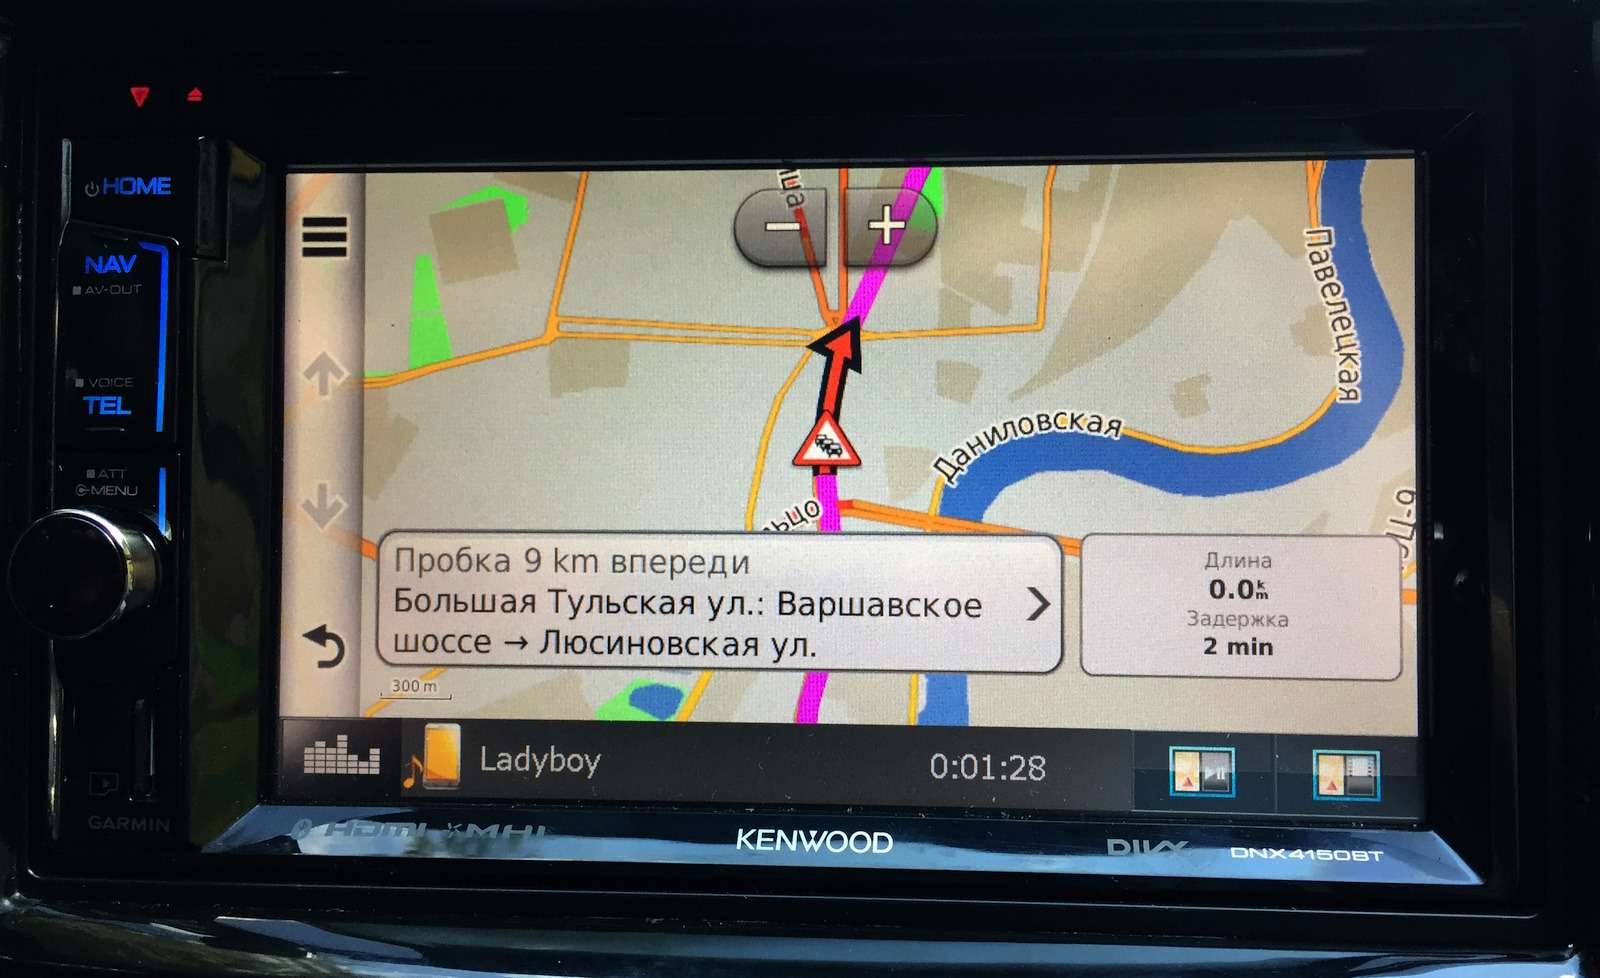 Компании-картографу удалось договориться о бесплатной поставке пользователям Garmin данных о дорожном трафике с компанией «Яндекс»